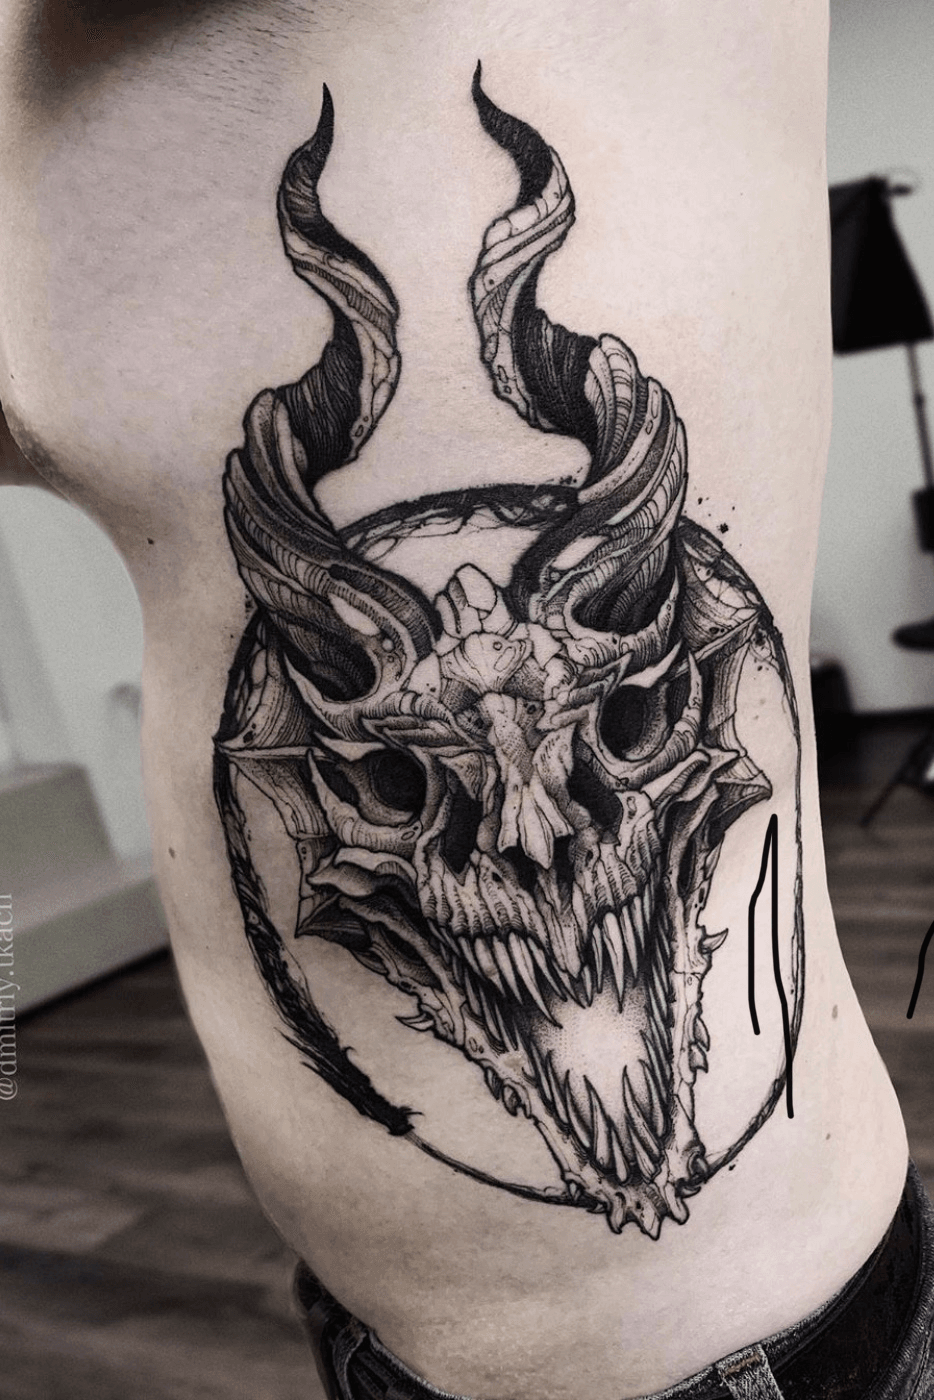 Dragon and skull Tattoo Design by tjiggotjurring on DeviantArt